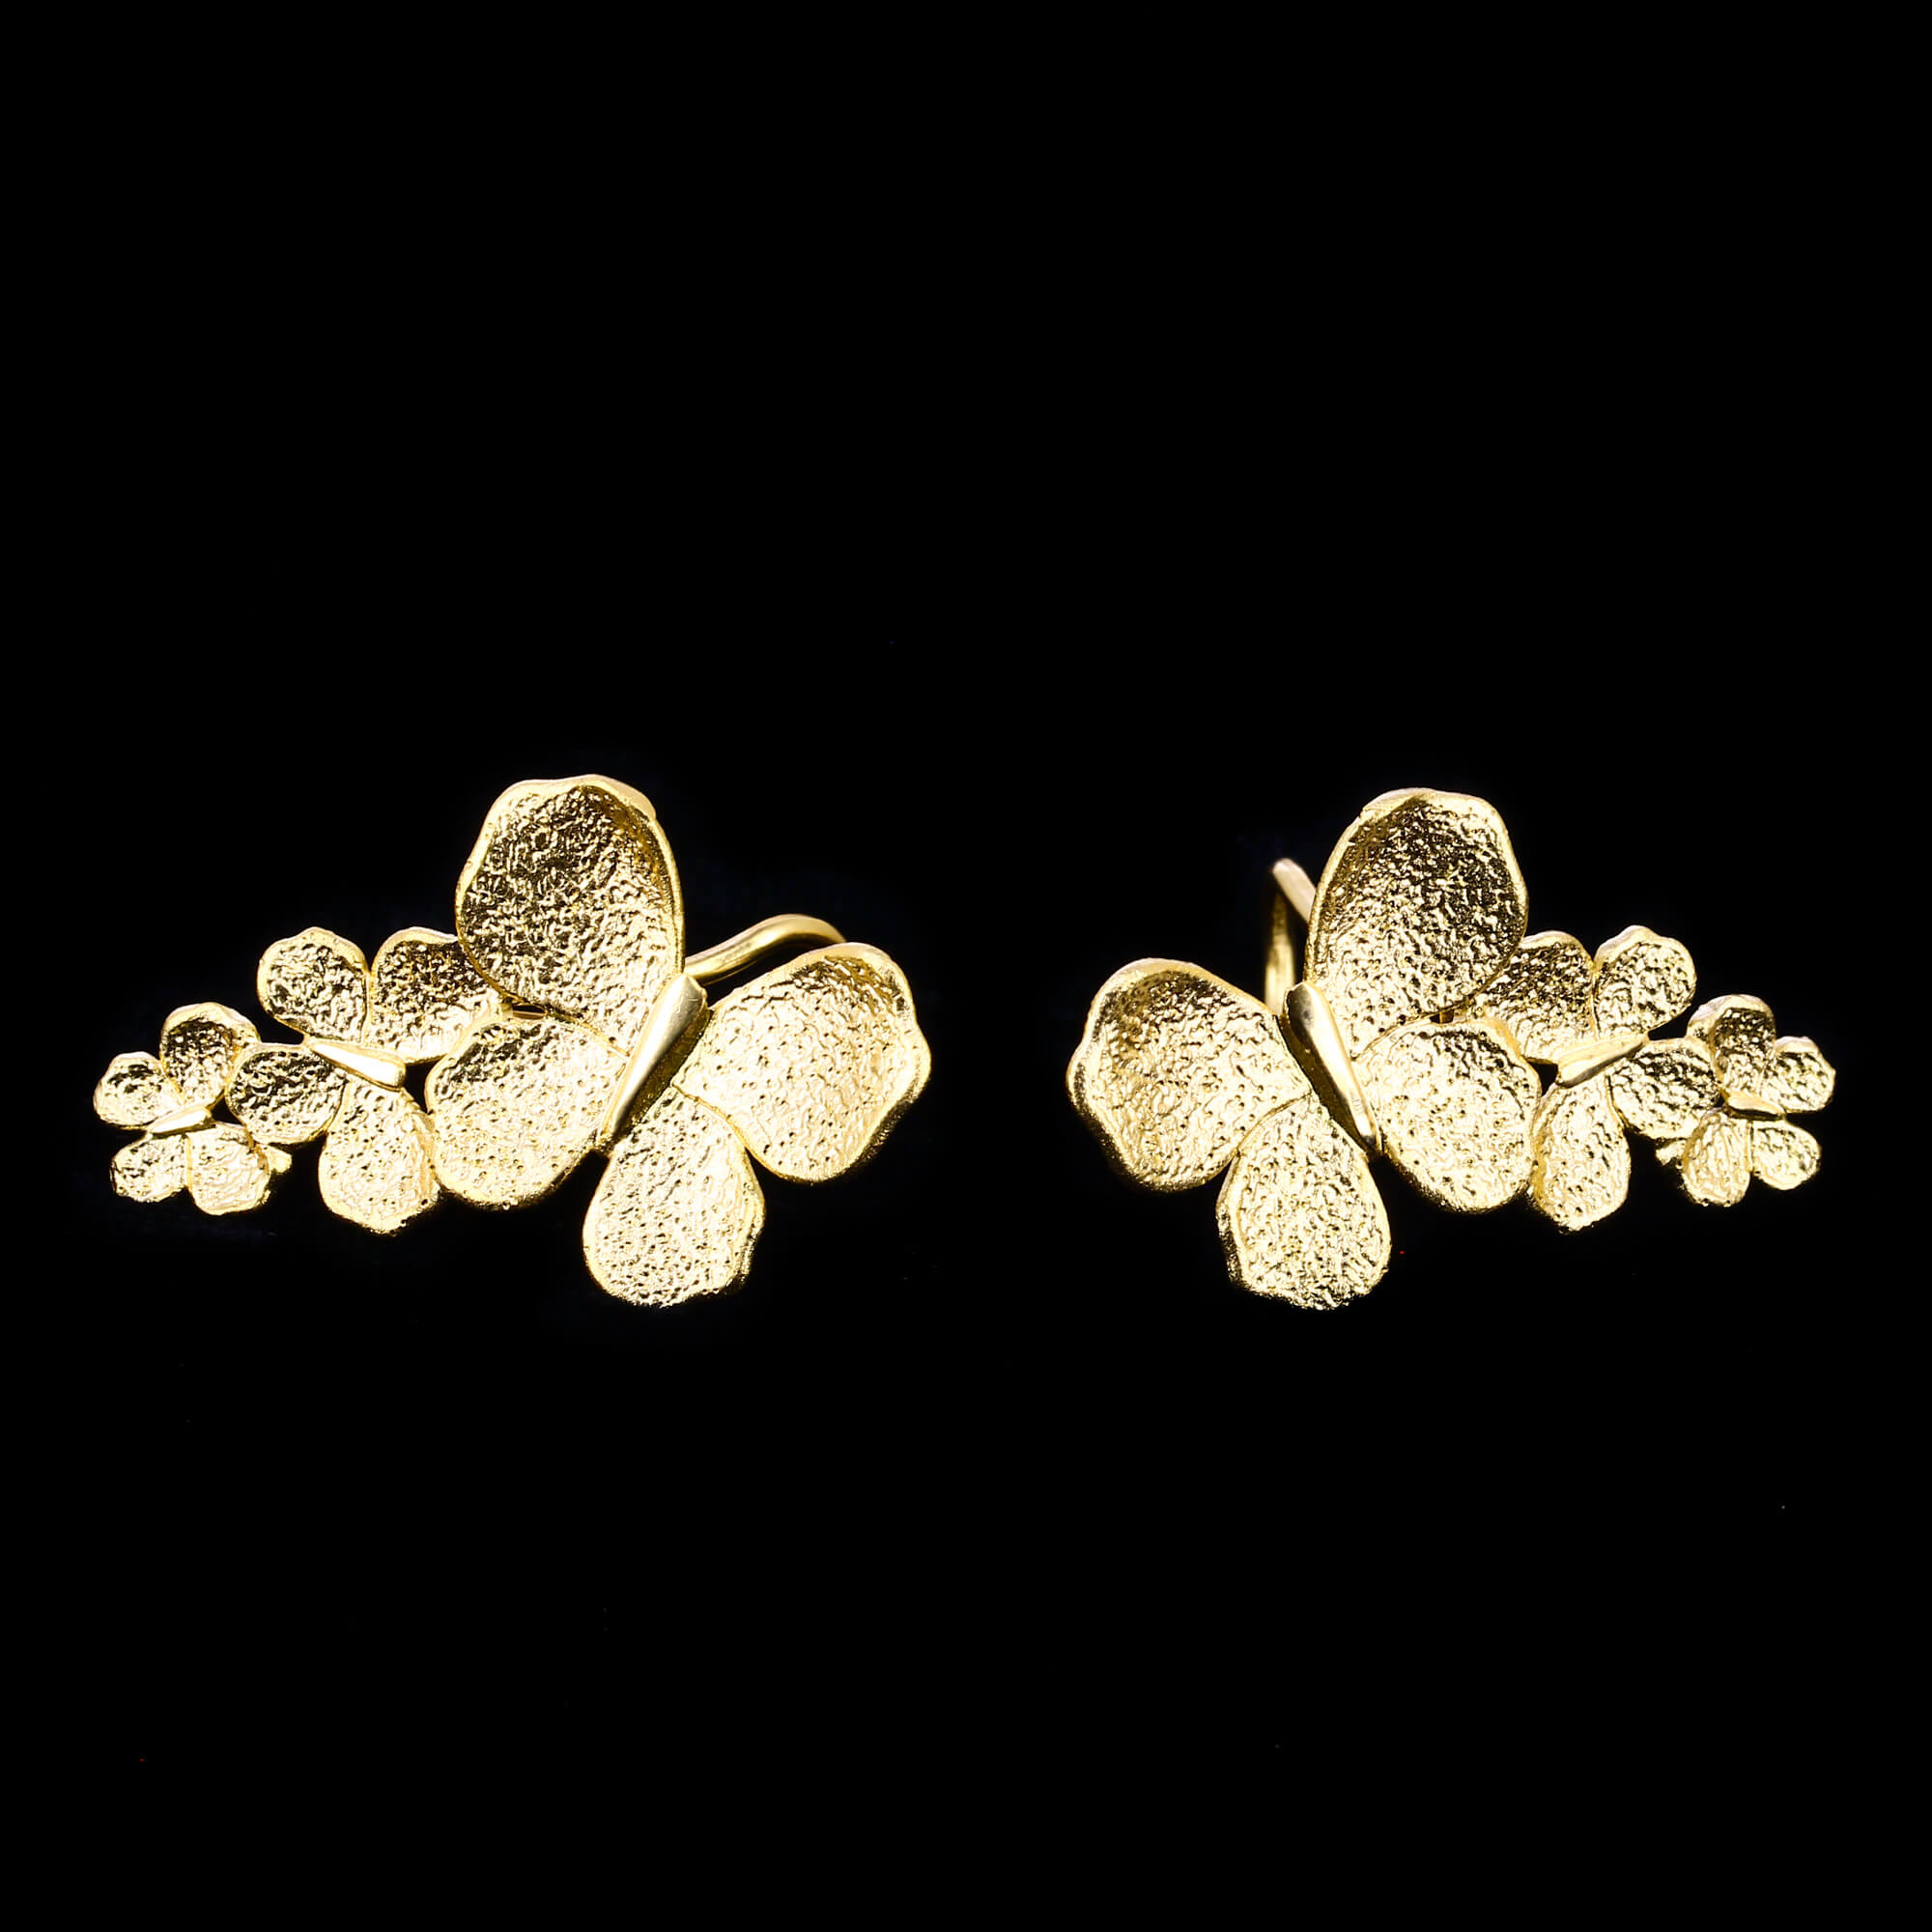 Gilt eye catcher butterfly earrings